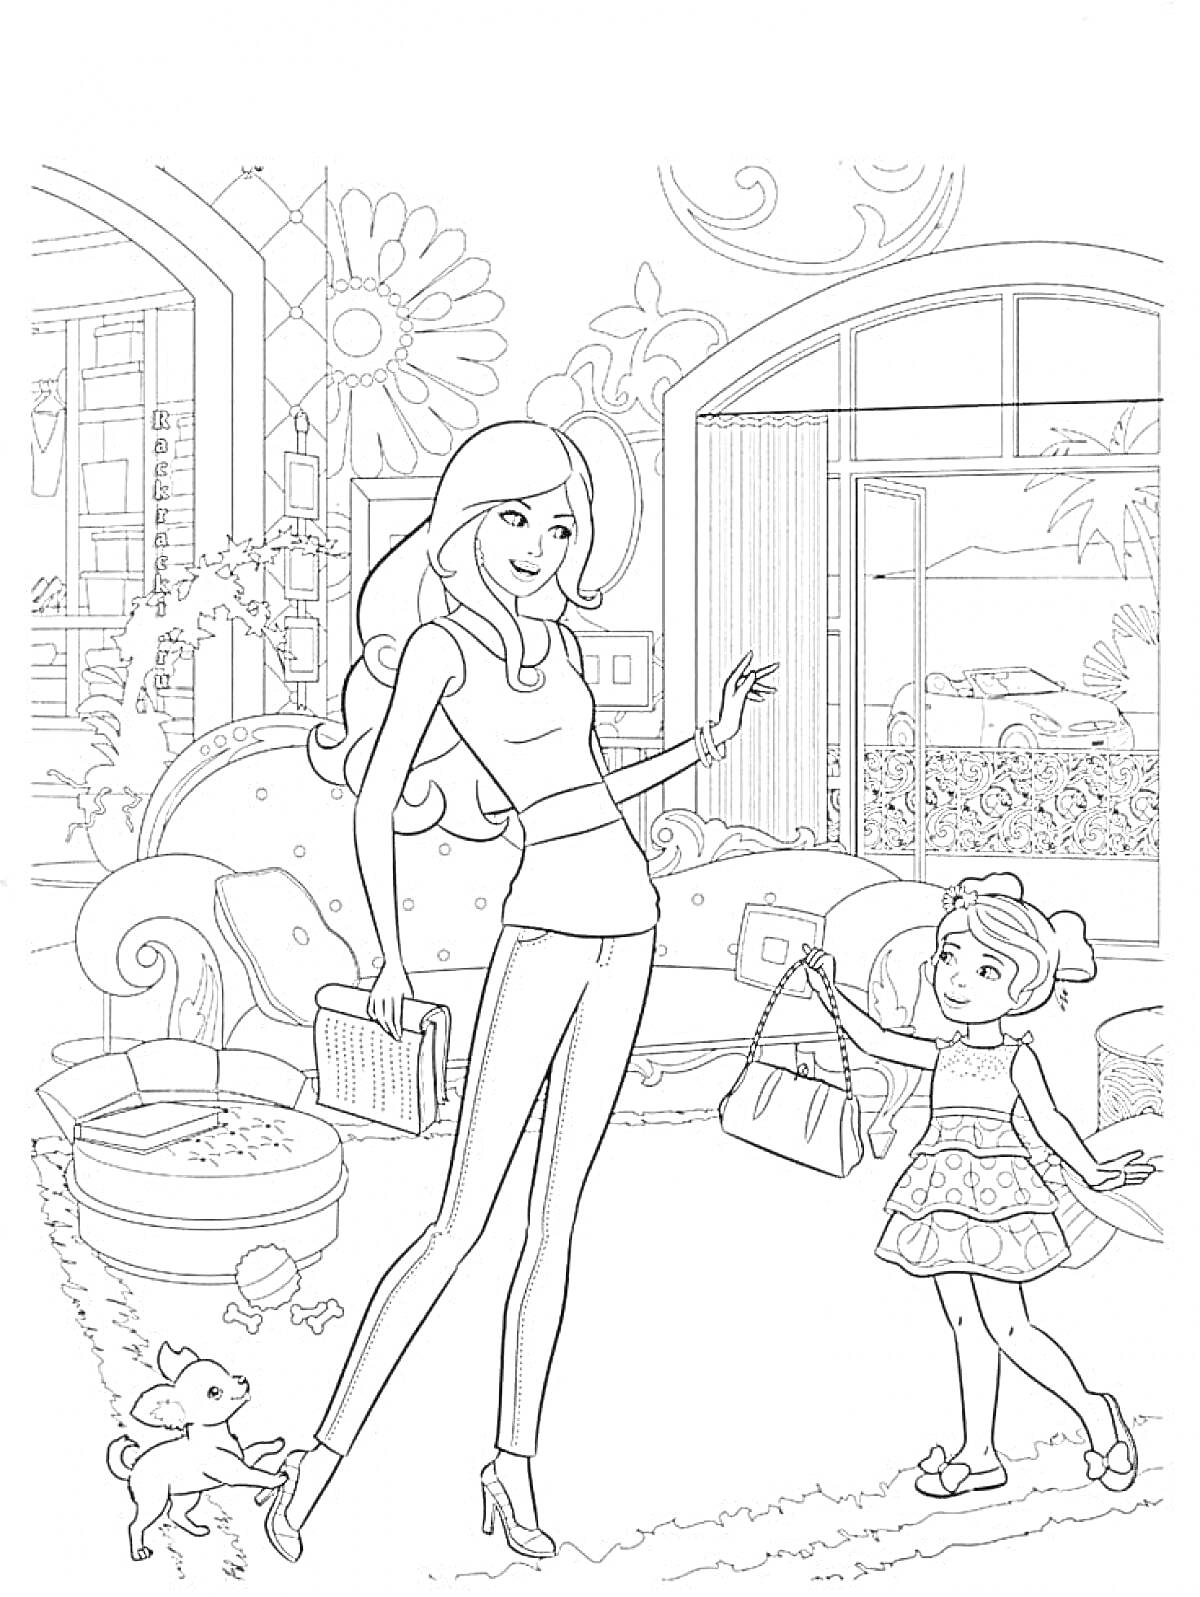 РаскраскаБарби и девочка в комнате с собачкой, цветами и окнами